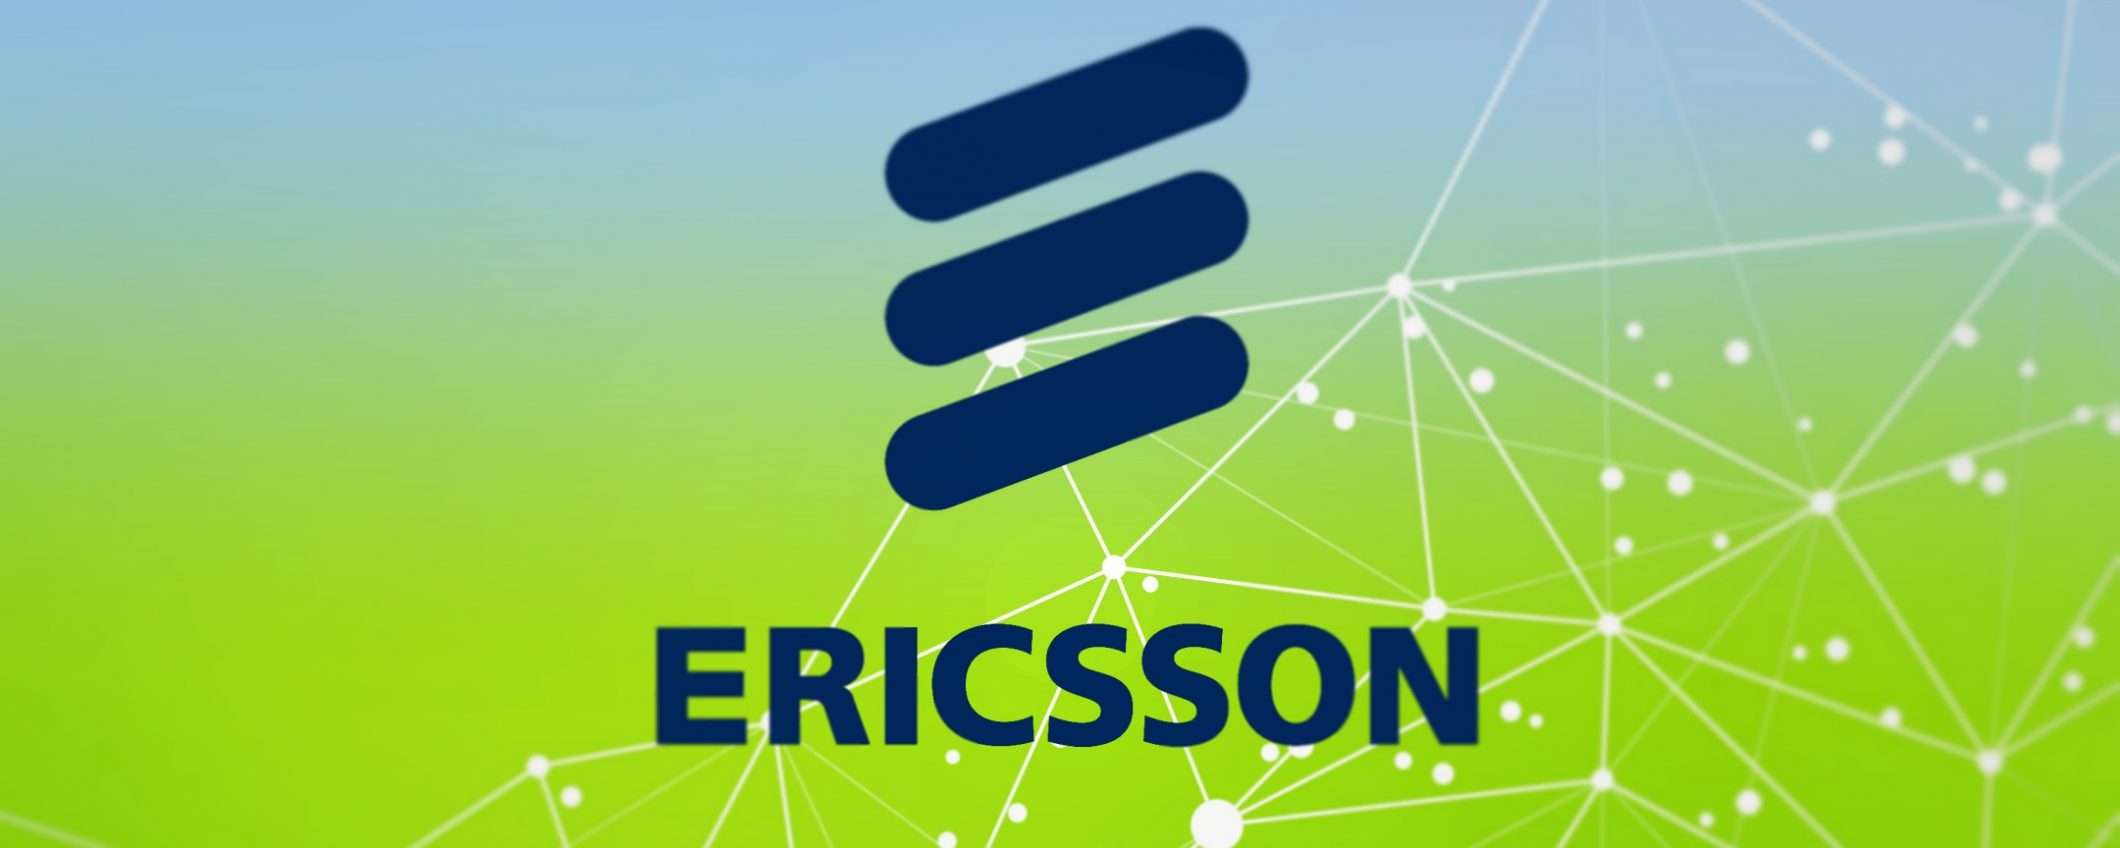 Ericsson vs Apple: è sfida sui brevetti 5G per gli iPhone